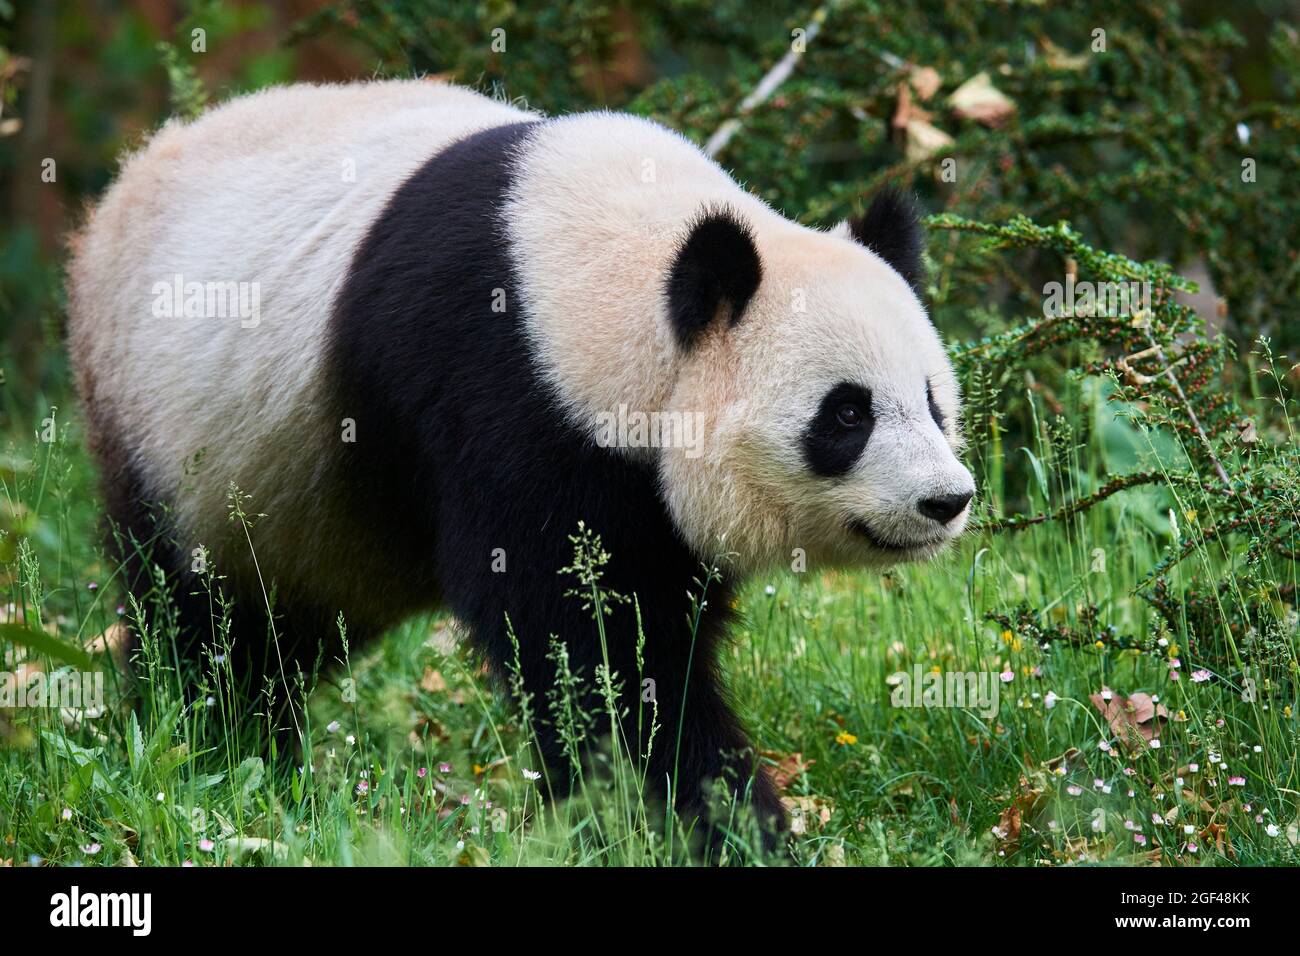 Portrait géant de panda mâle (Ailuropoda melanoleuca) captif, Zoopark Beauval, France. Banque D'Images